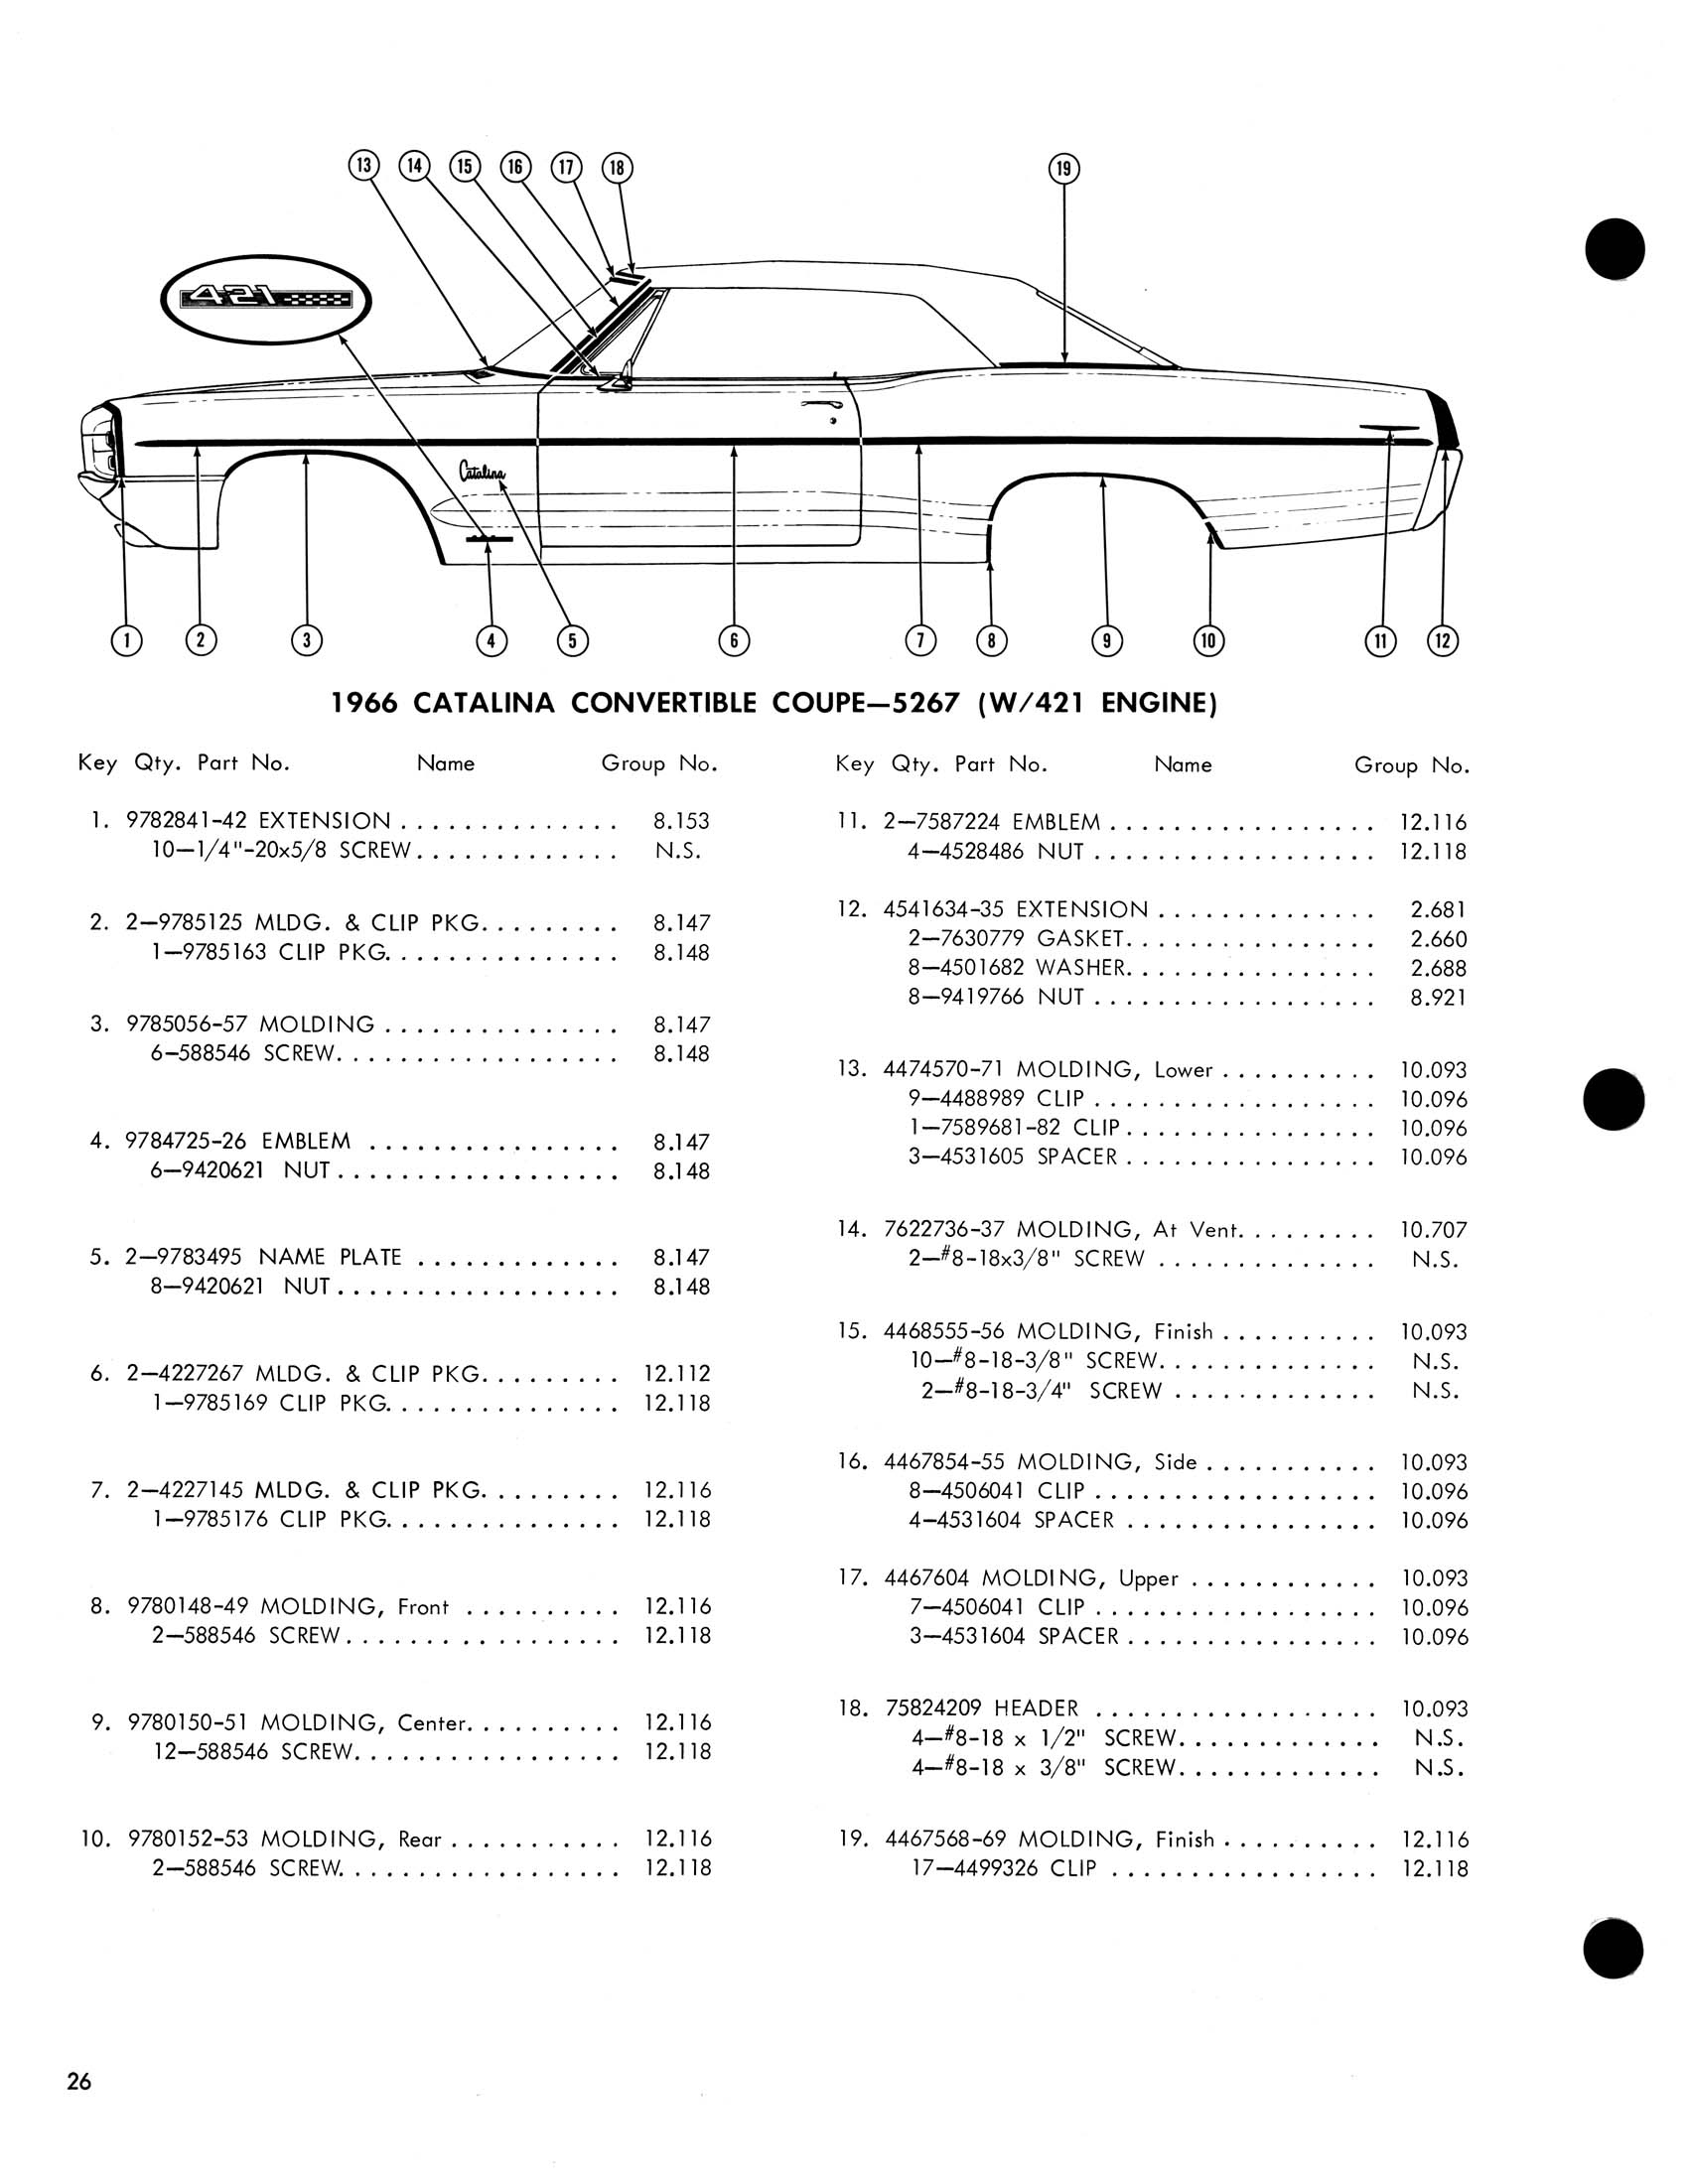 1966_Pontiac_Molding_and_Clip_Catalog-26